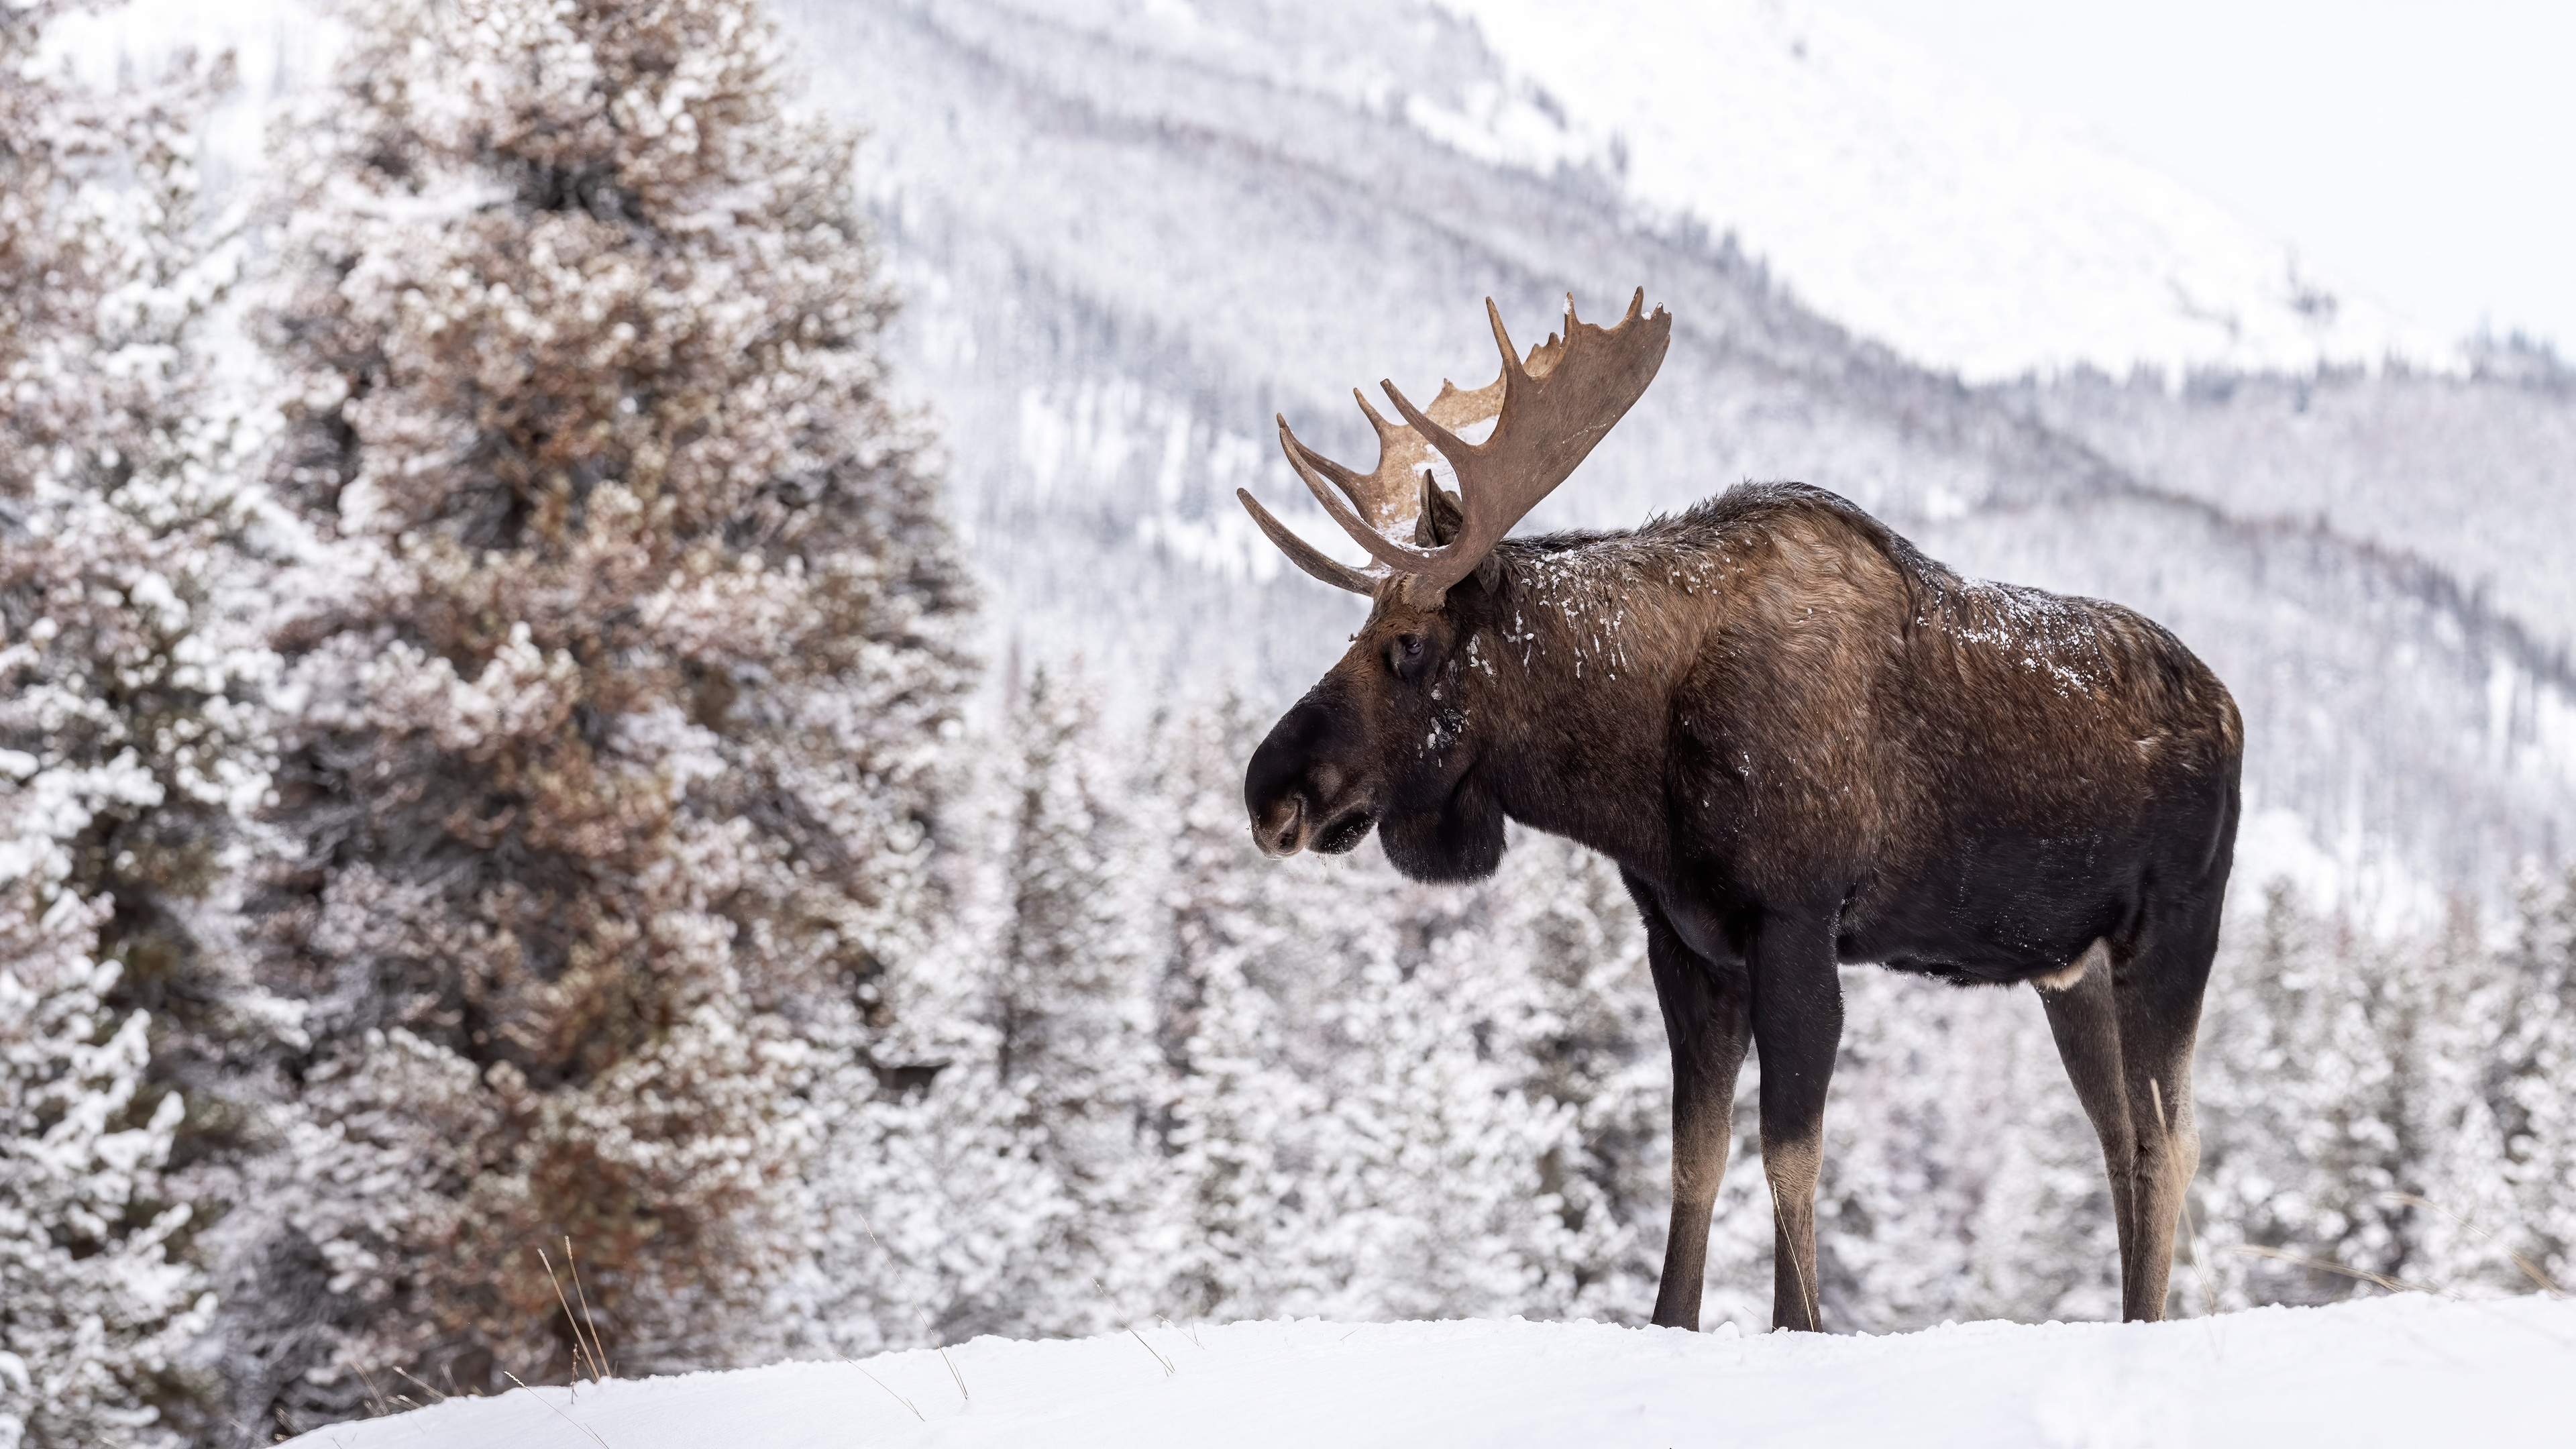 Moose, Winter wonderland, Majestic moose, Scenic beauty, 3840x2160 4K Desktop